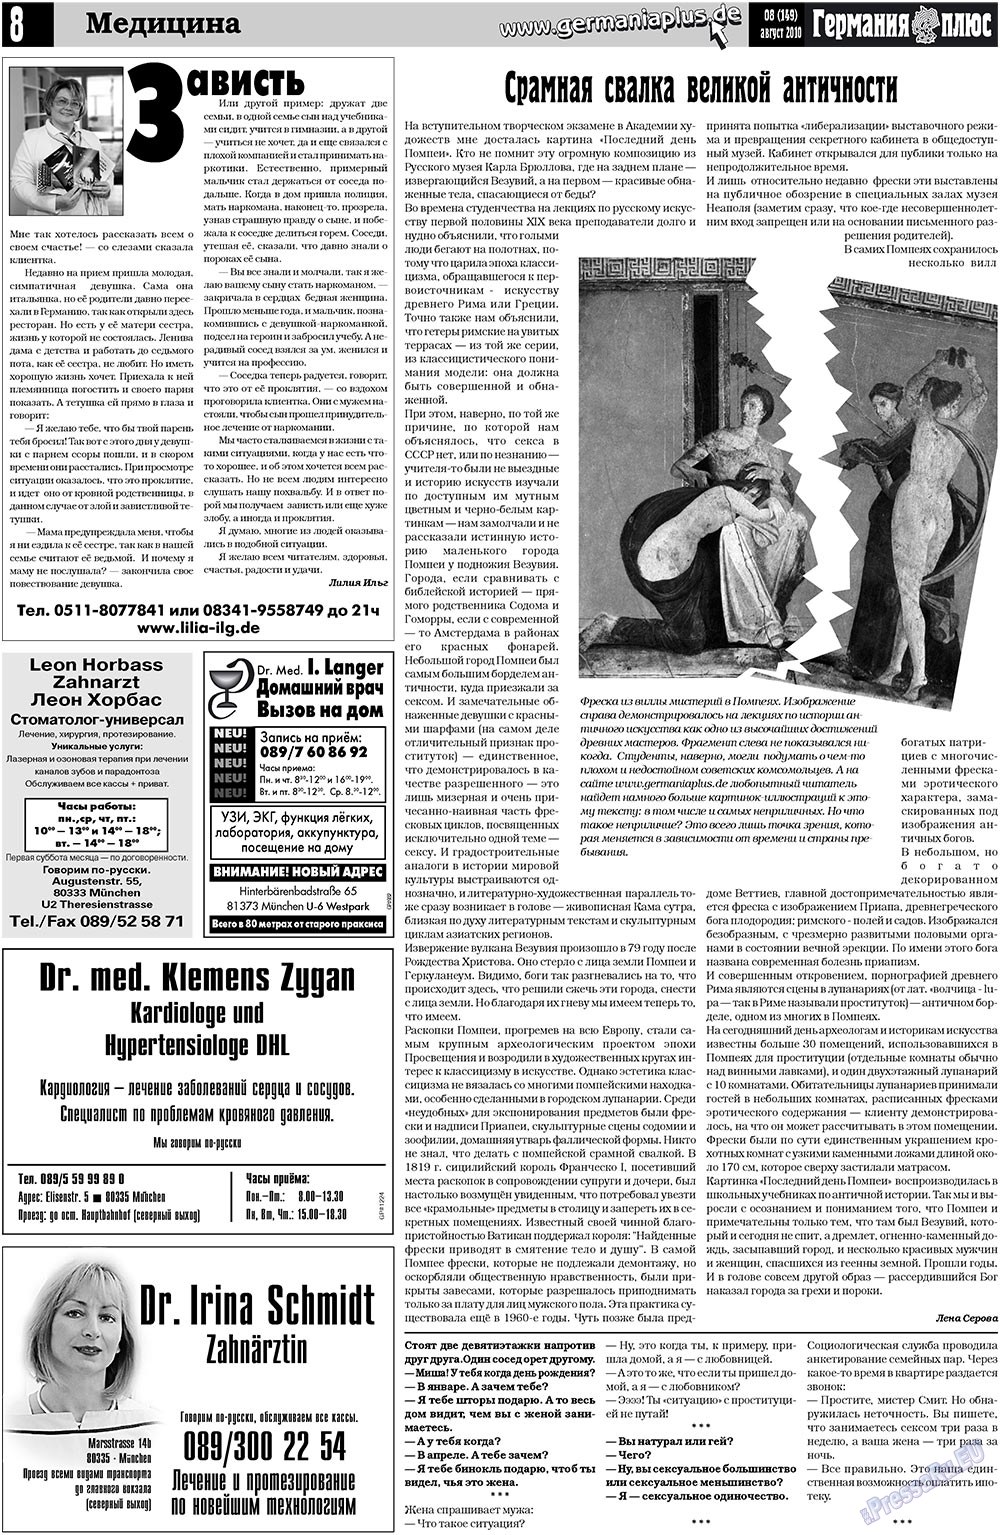 Германия плюс, газета. 2010 №8 стр.8